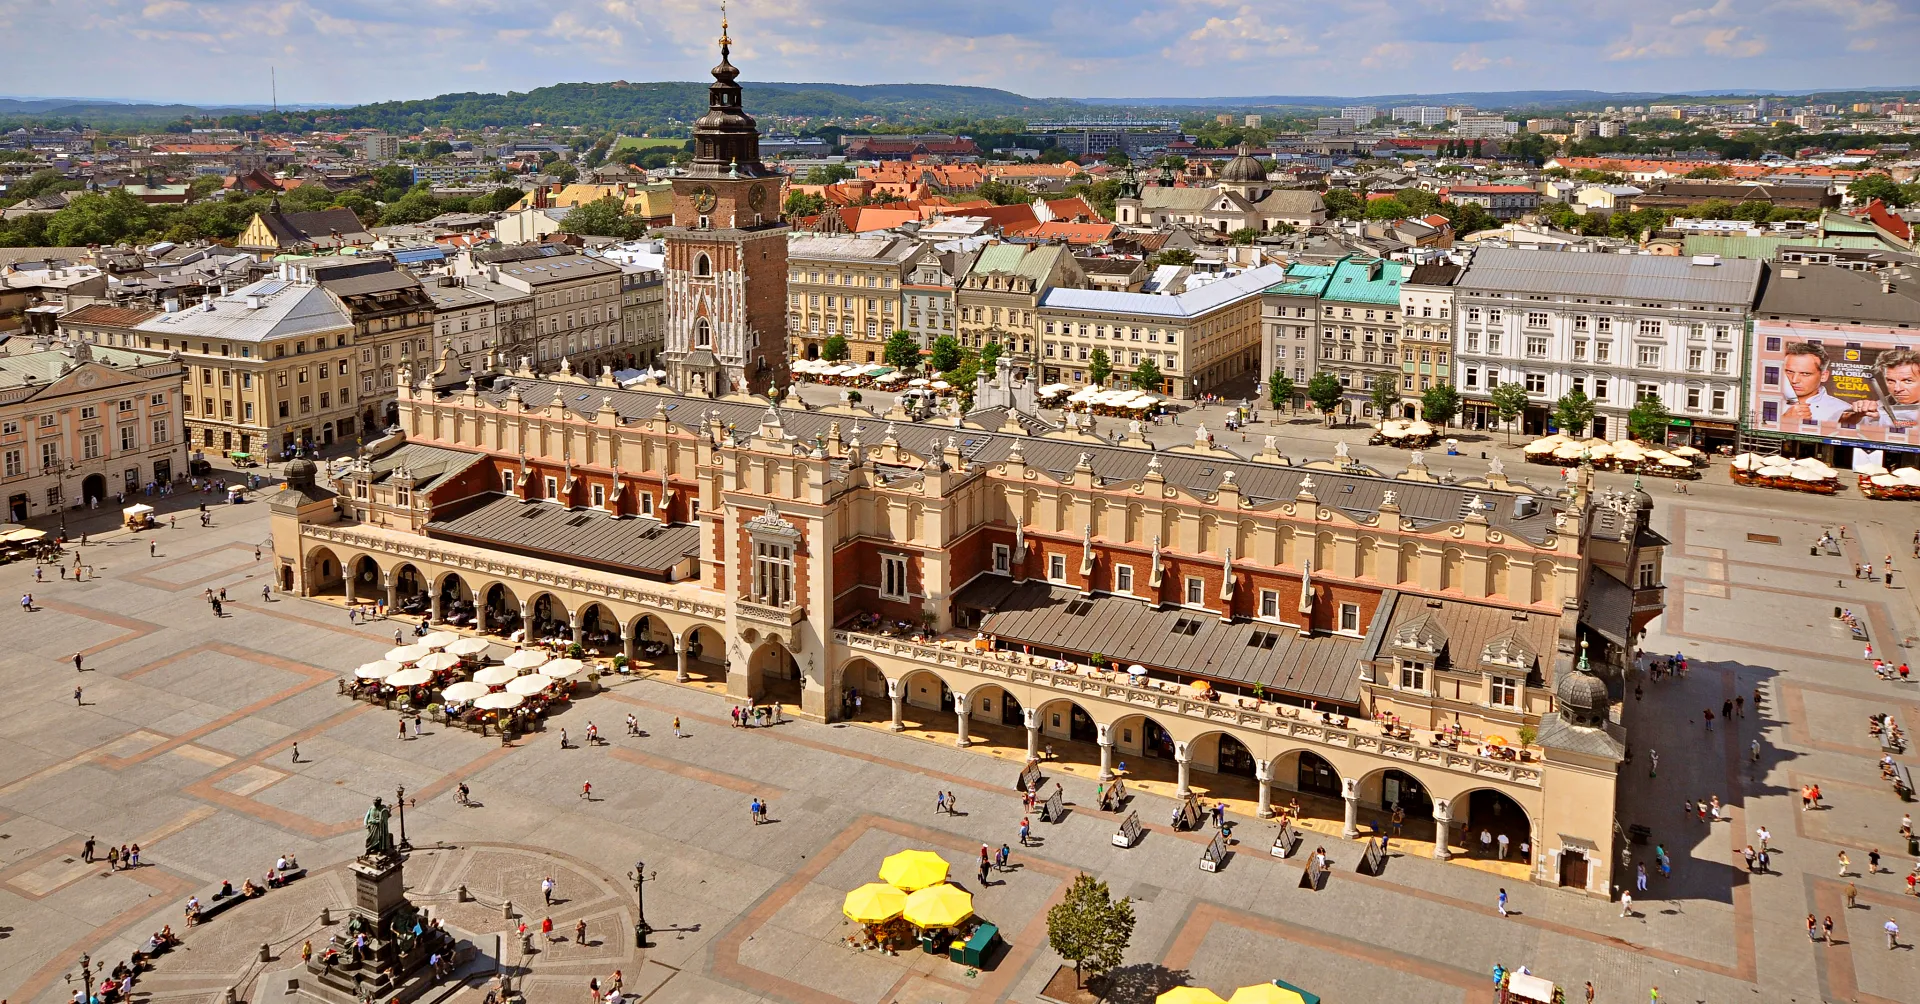 Krakow, stara kraljeva prestolnica Poljske